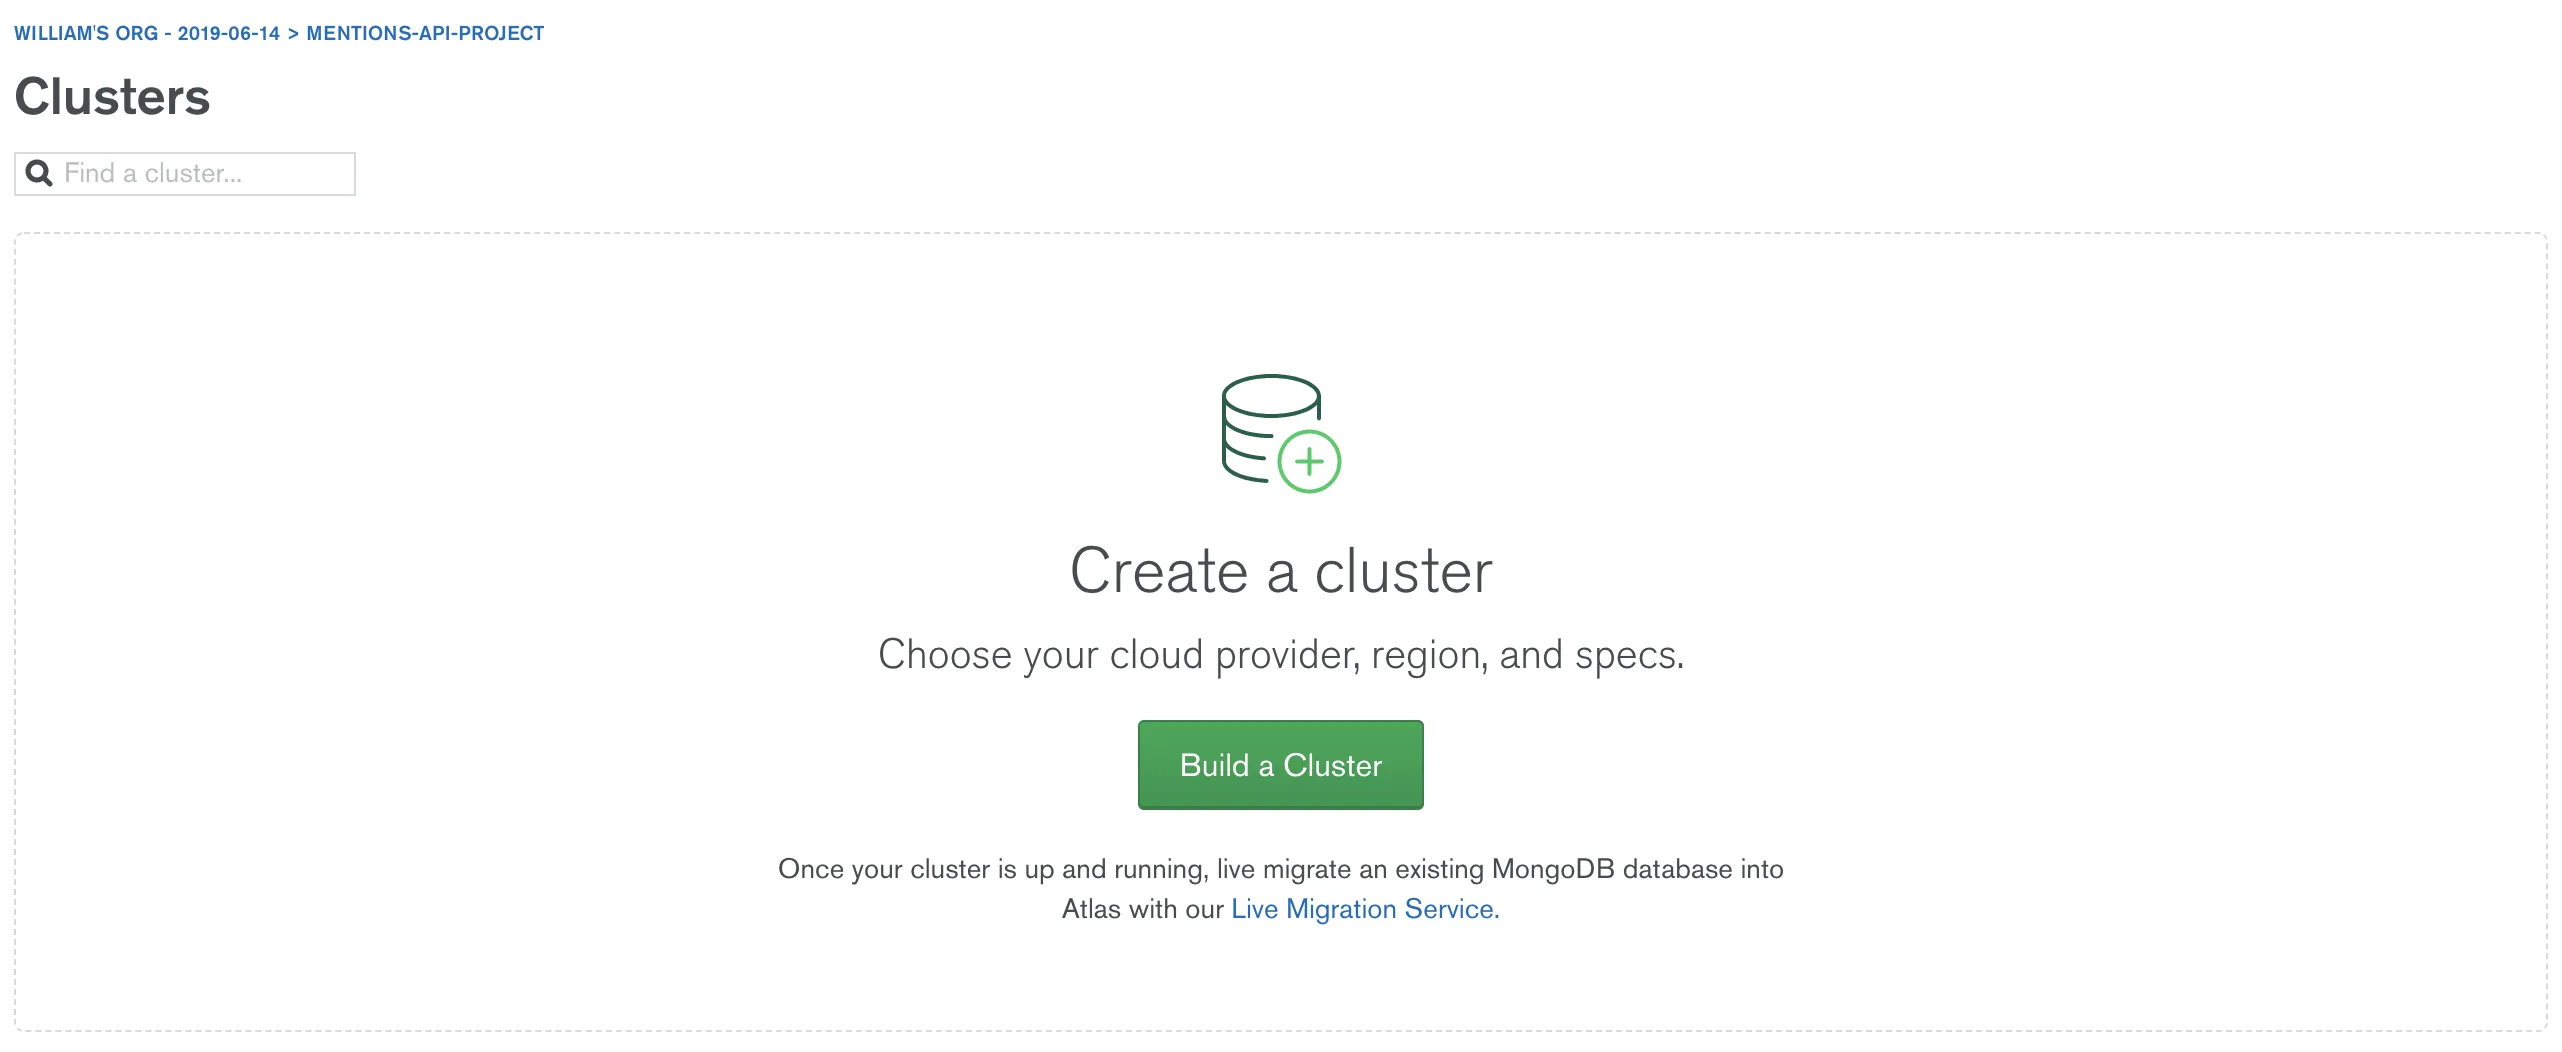 Imagem do botão de criação de clusters